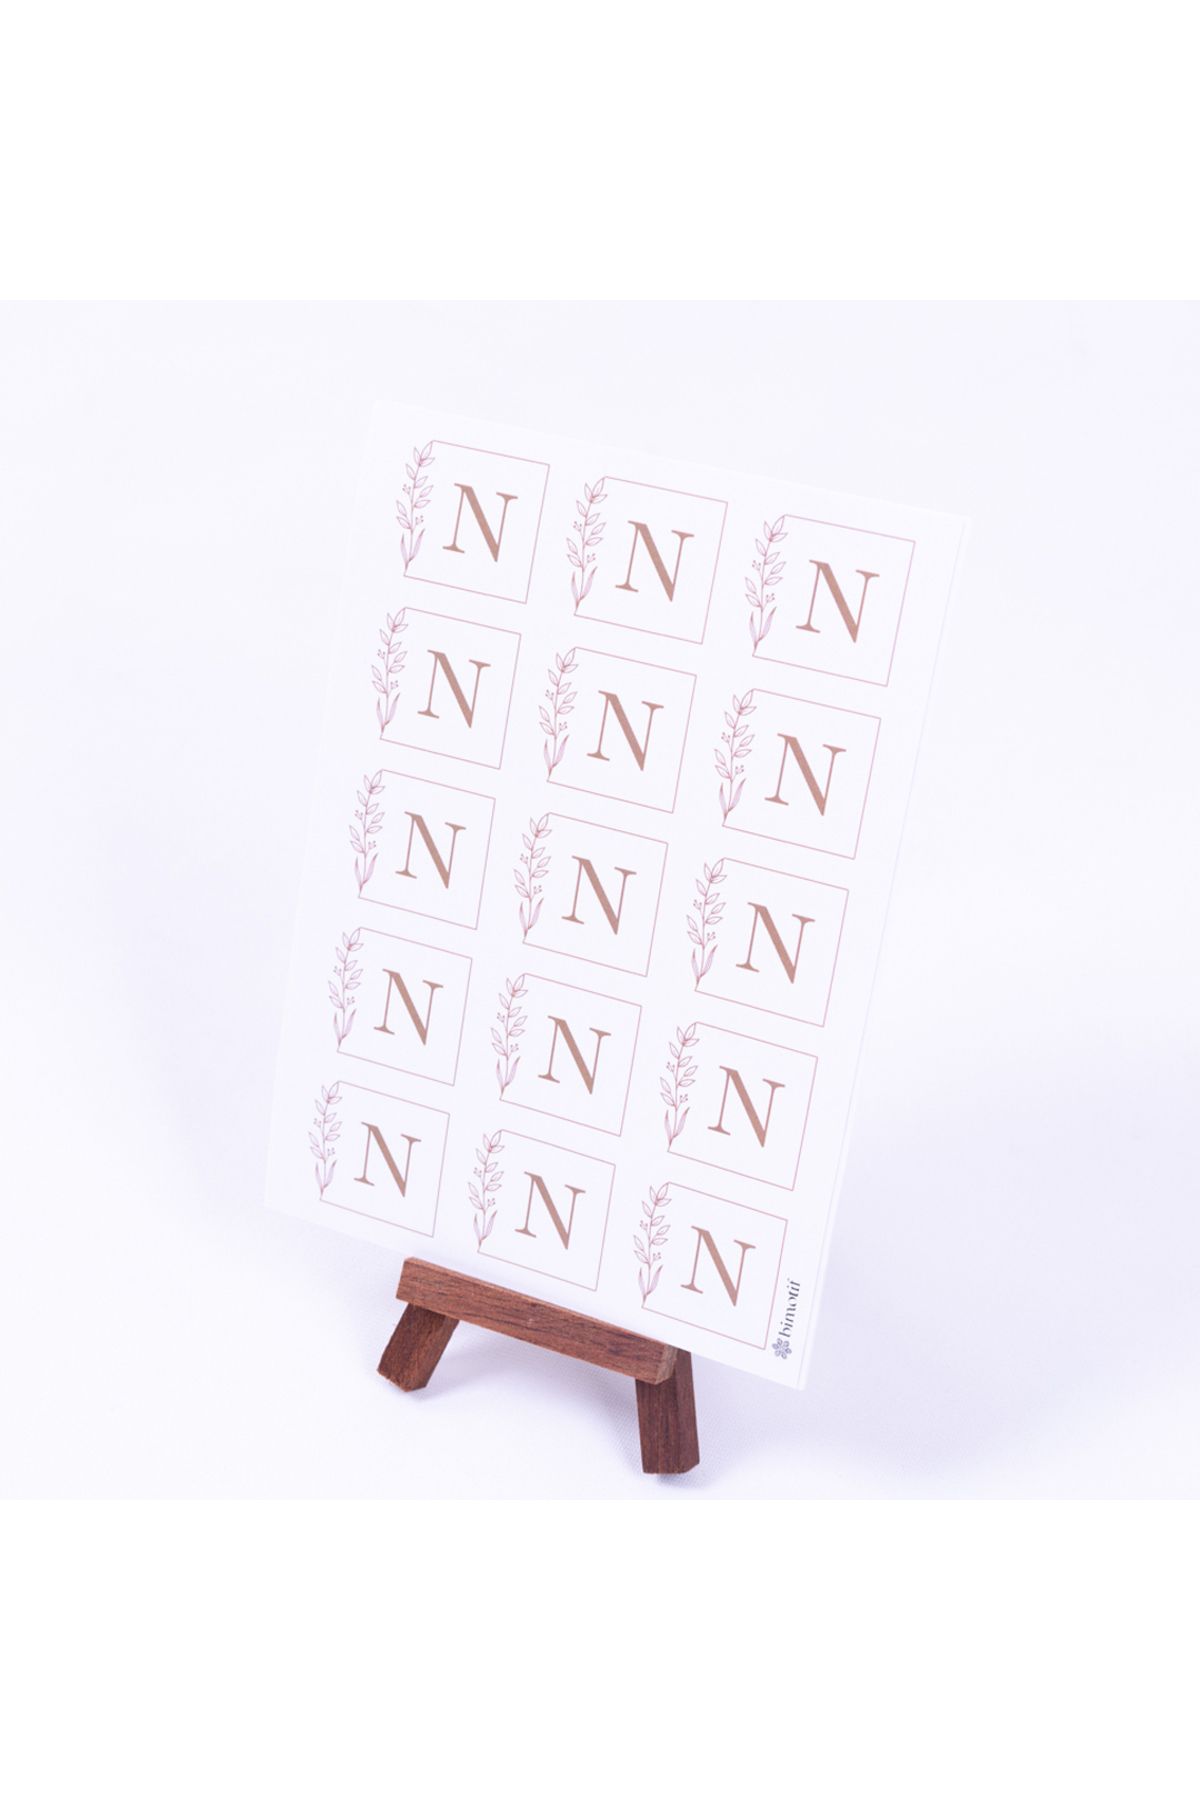 Bimotif Yapıkanlı sticker harf seti, N Harfi, 3,5 cm ölçülerinde, 30 adet